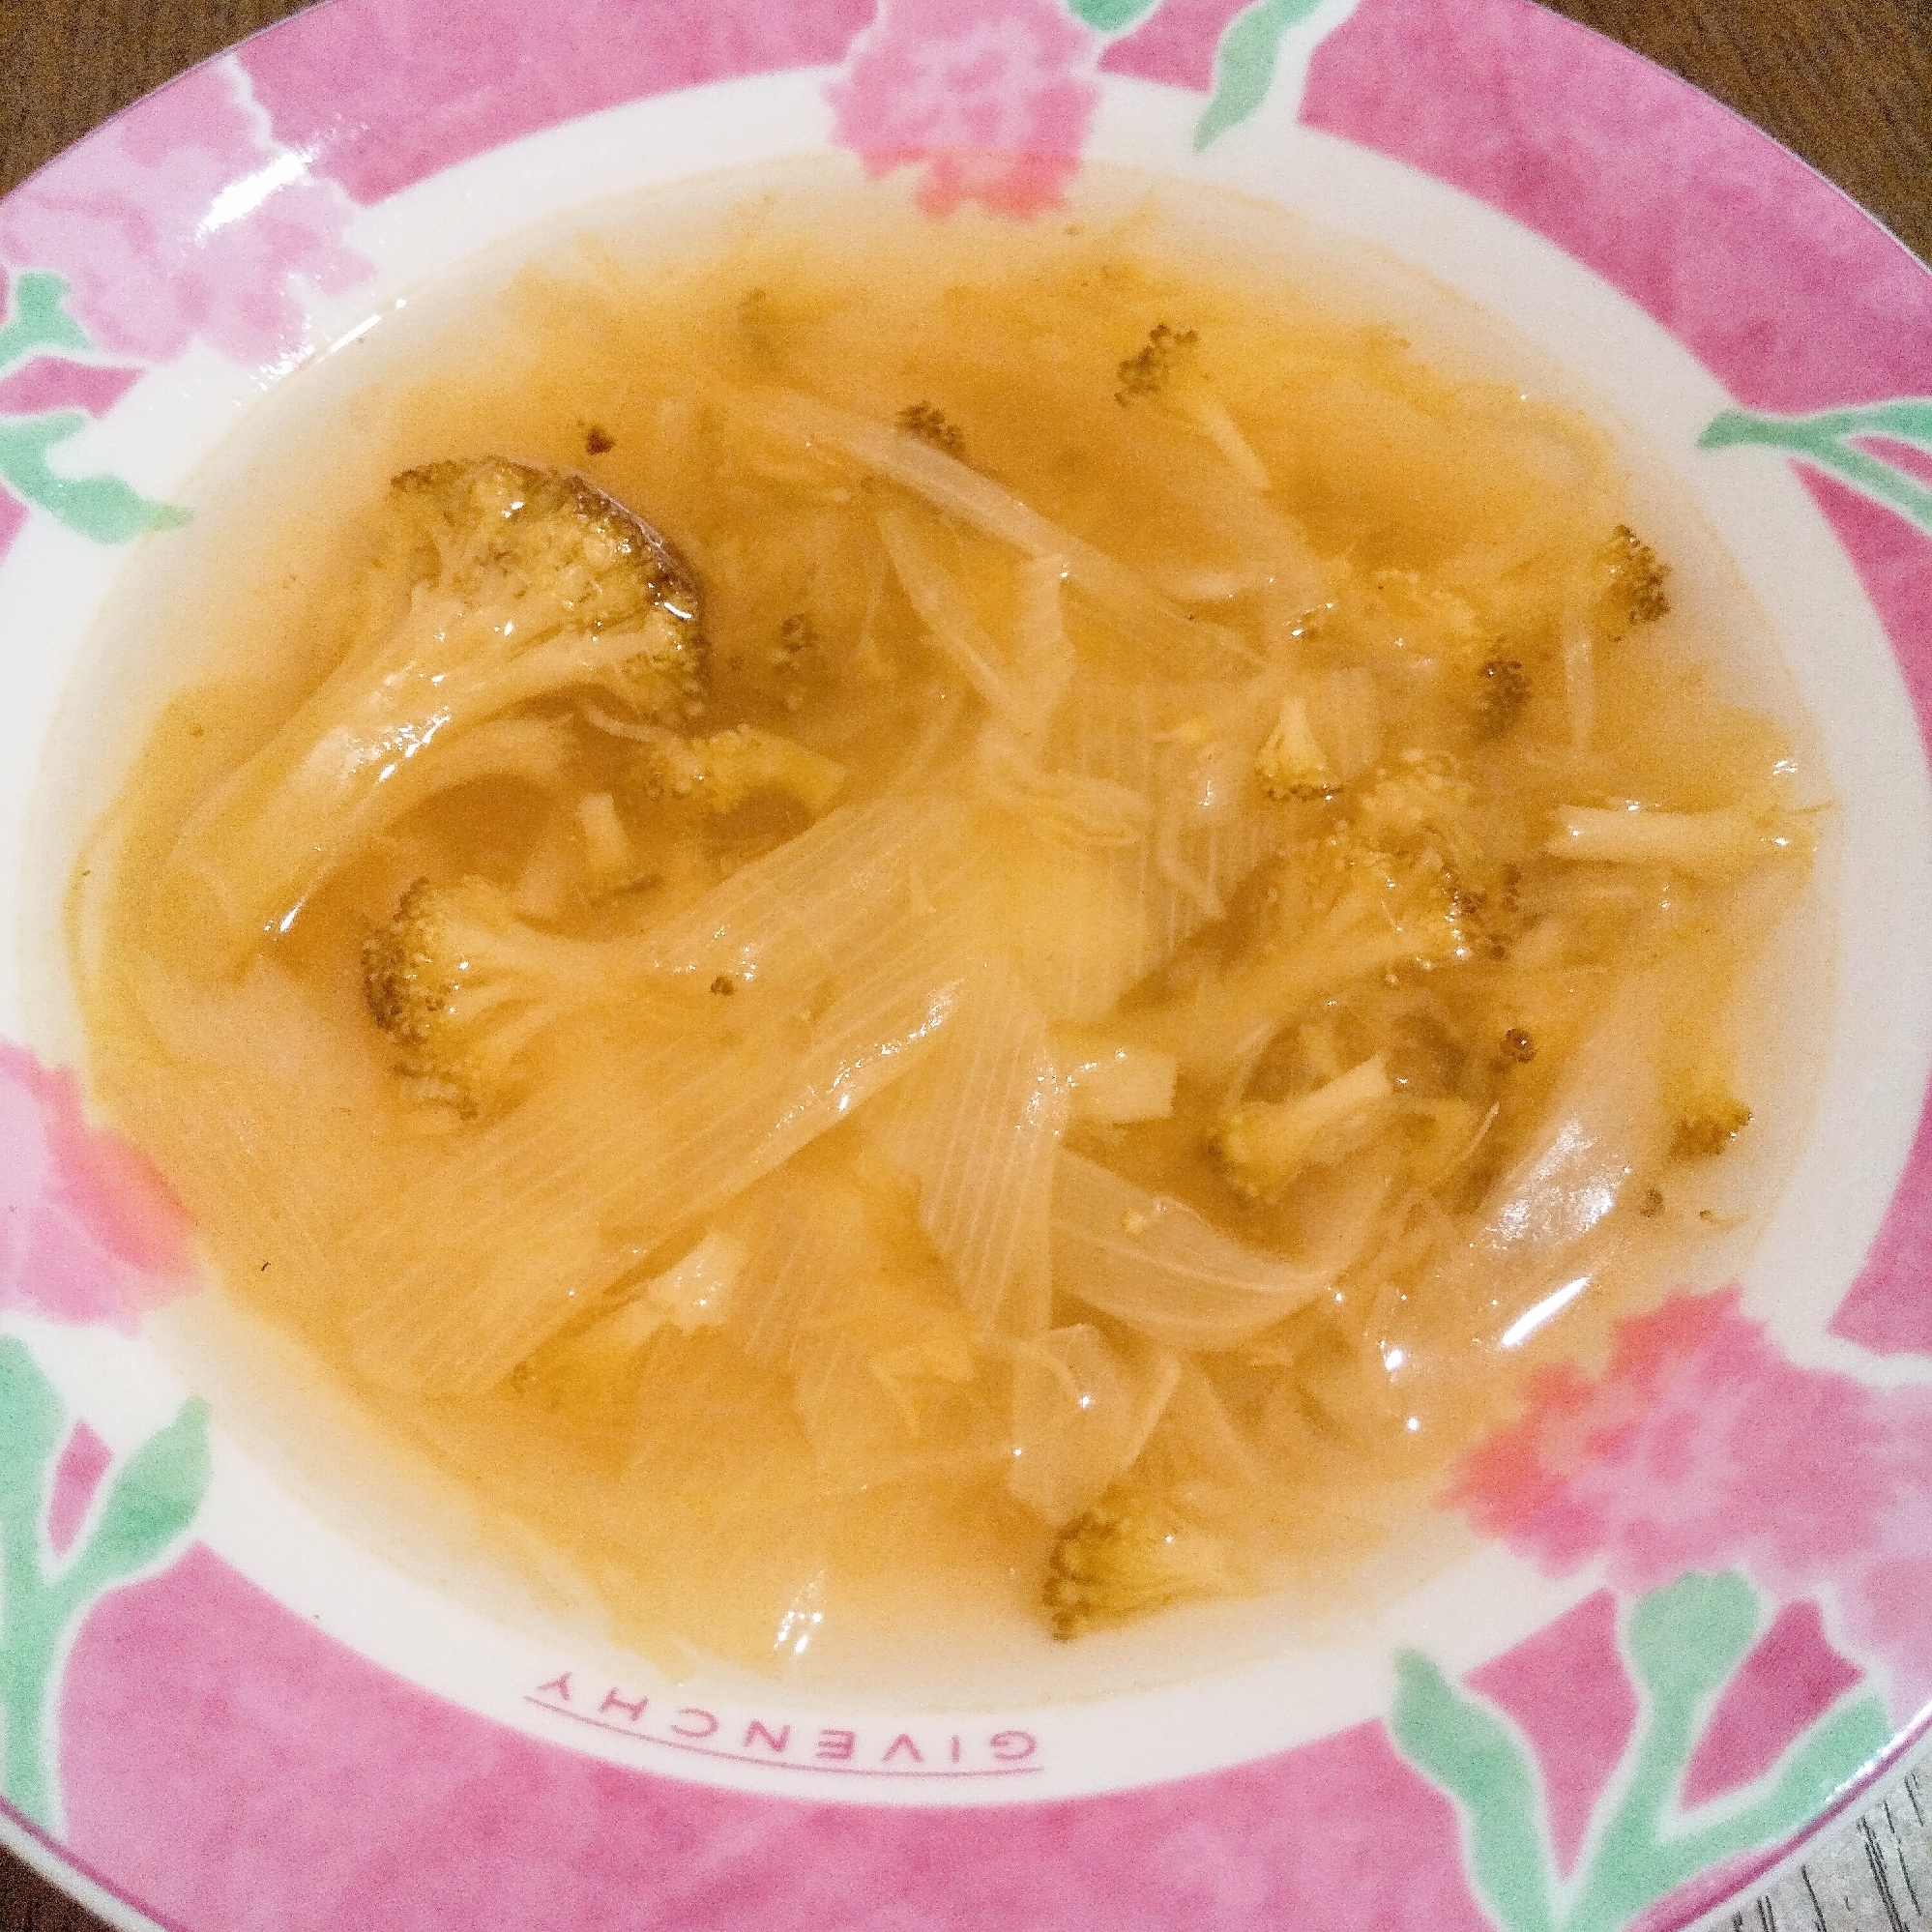 カレー風味の野菜スープ